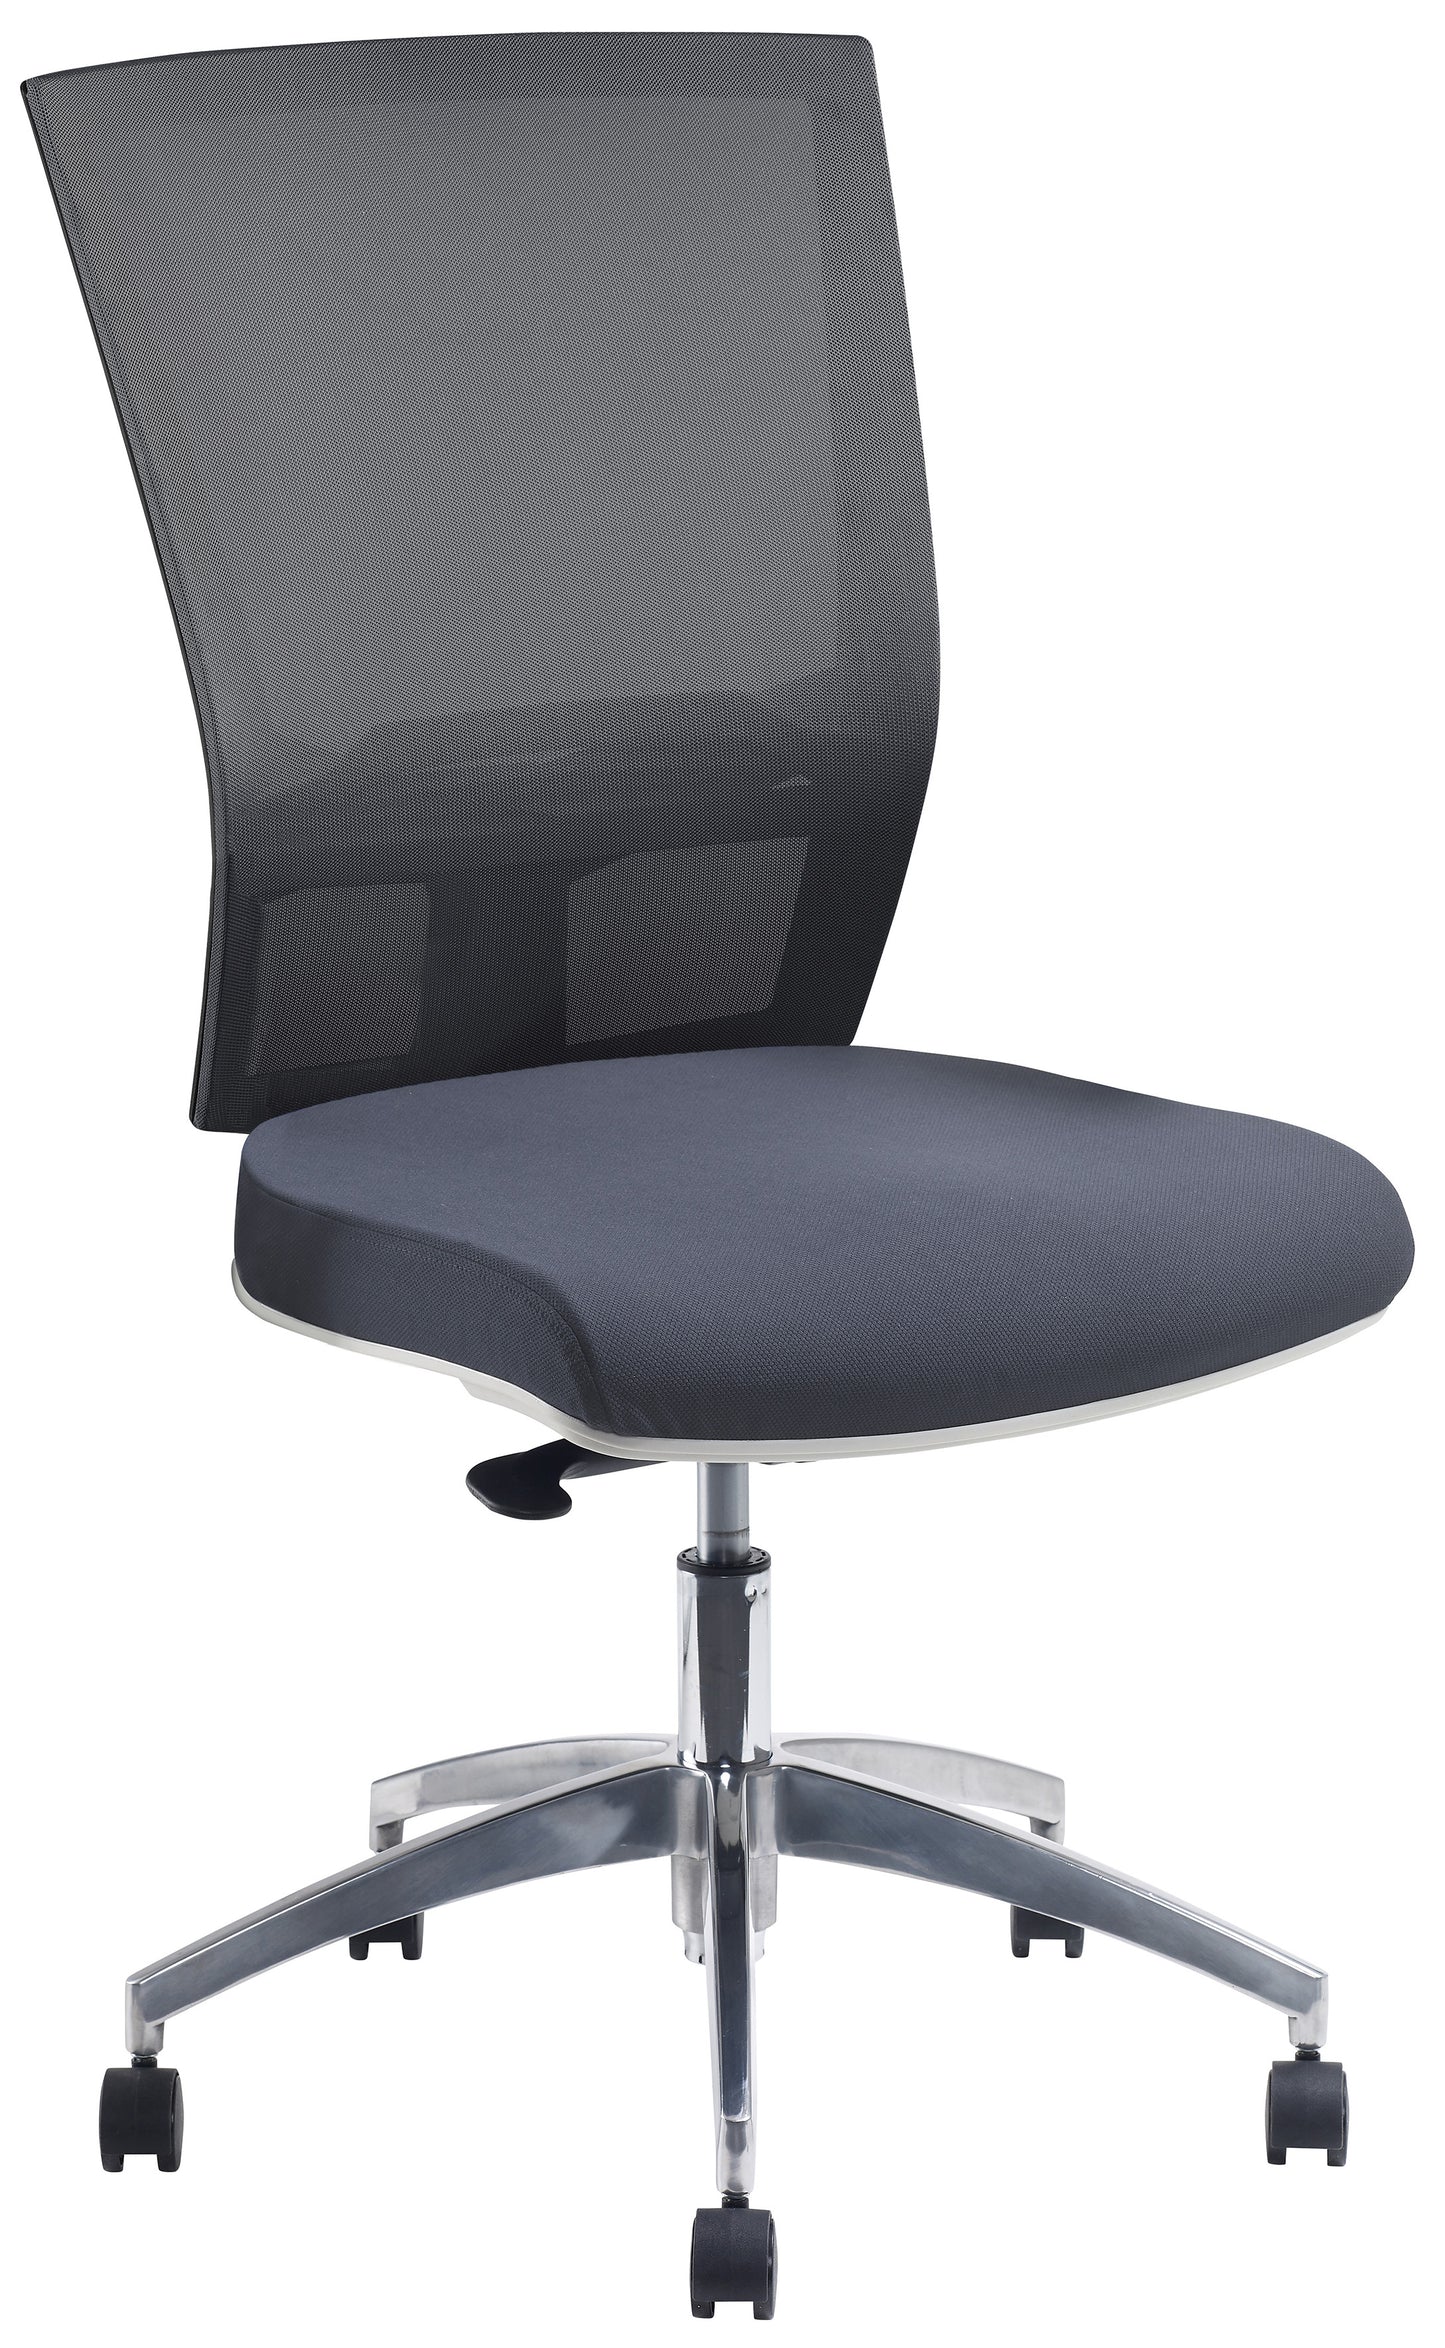 Chair - Advance Air Plus White Frame